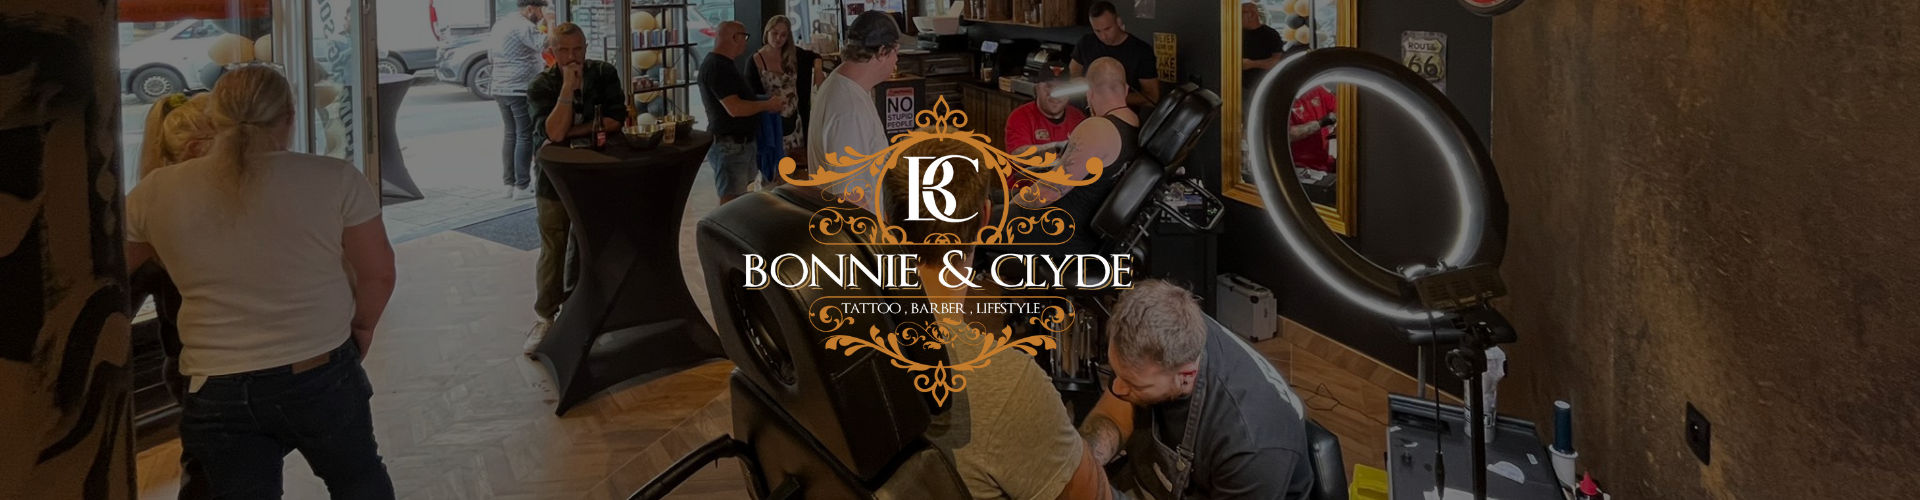 bonnie & Clyde tattoo shop Gent en Eeklo